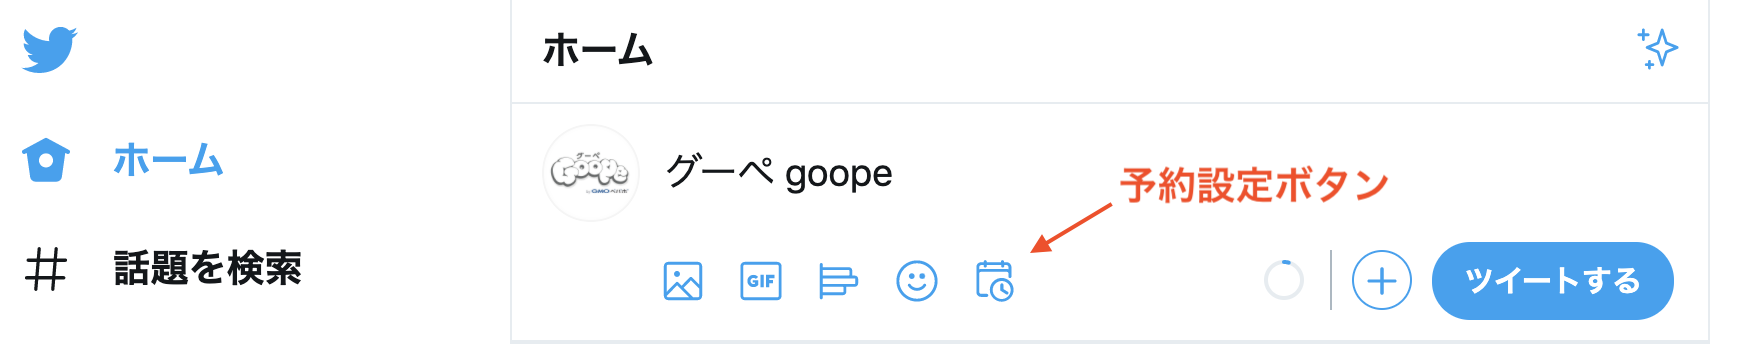 グーペ公式Twitterの投稿画面